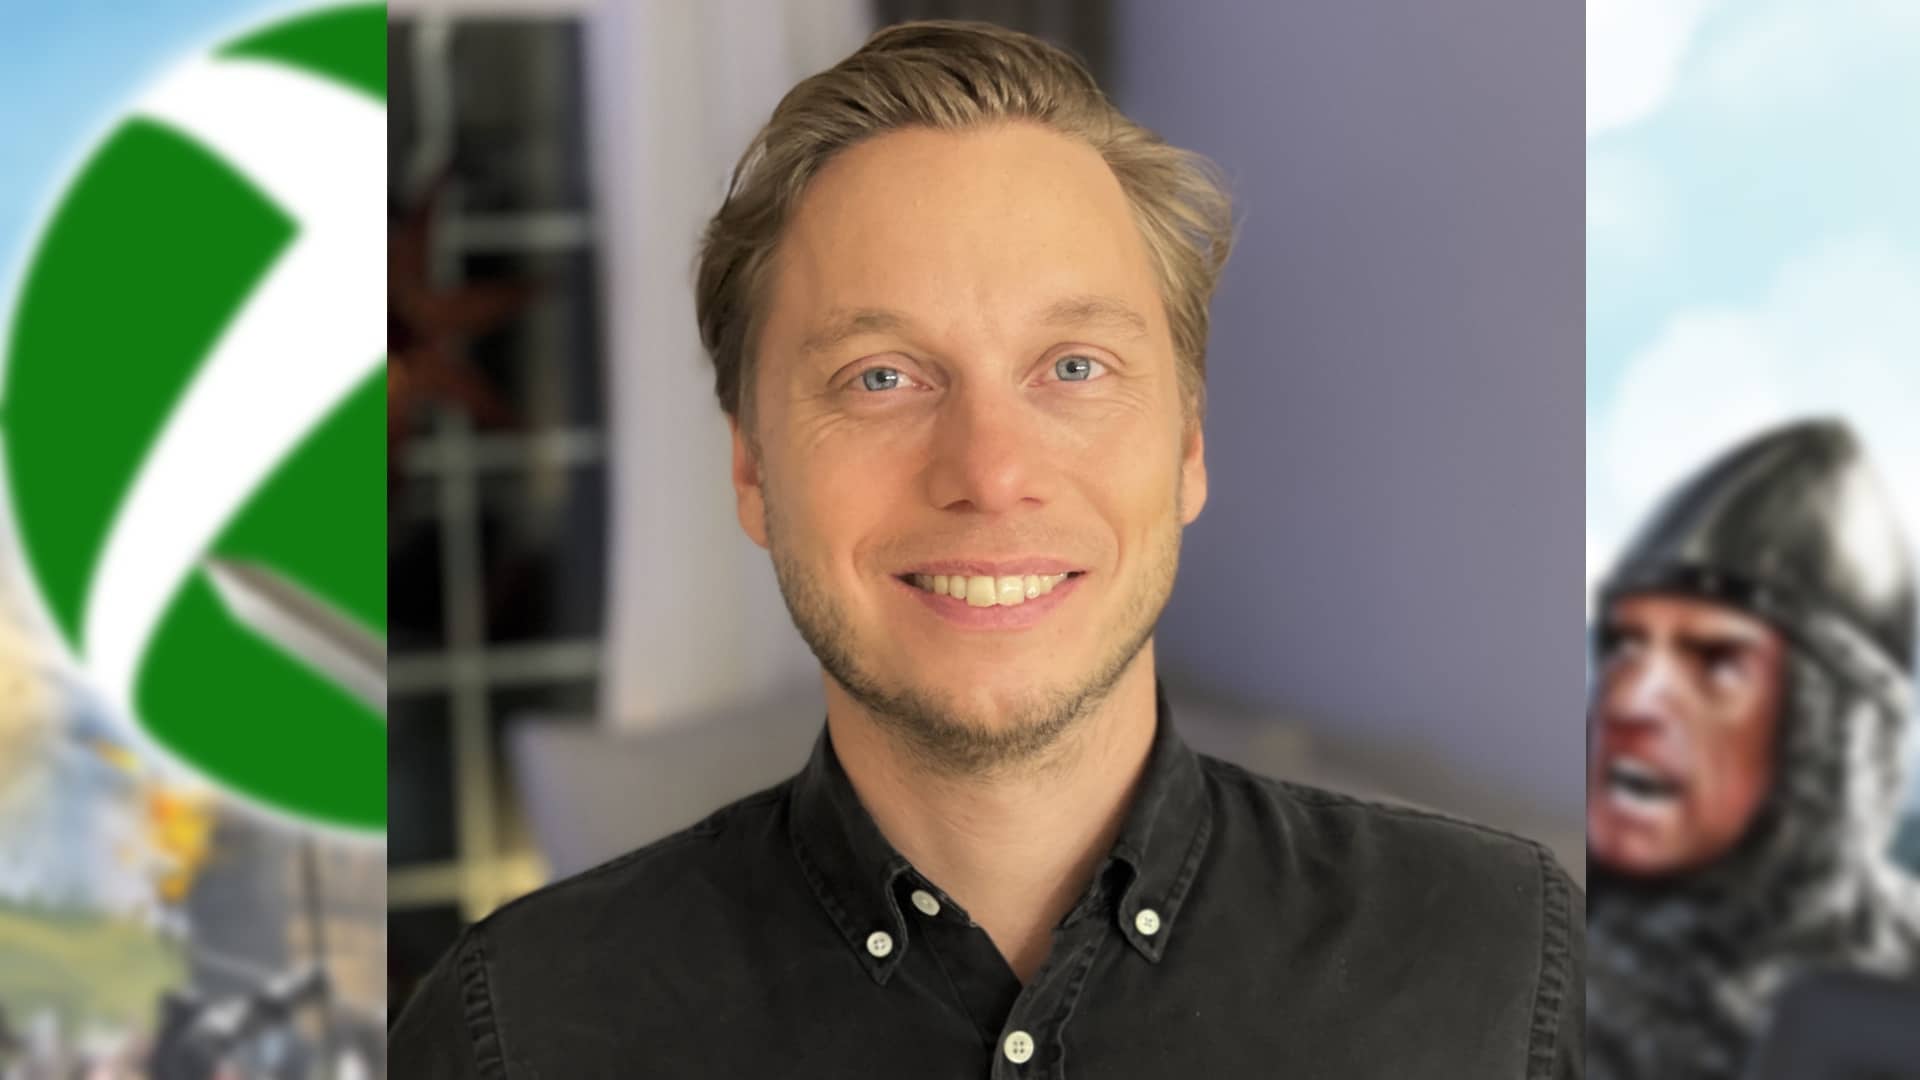 Johan Bolin is Chief Marketing Officer at Paradox Interactive.